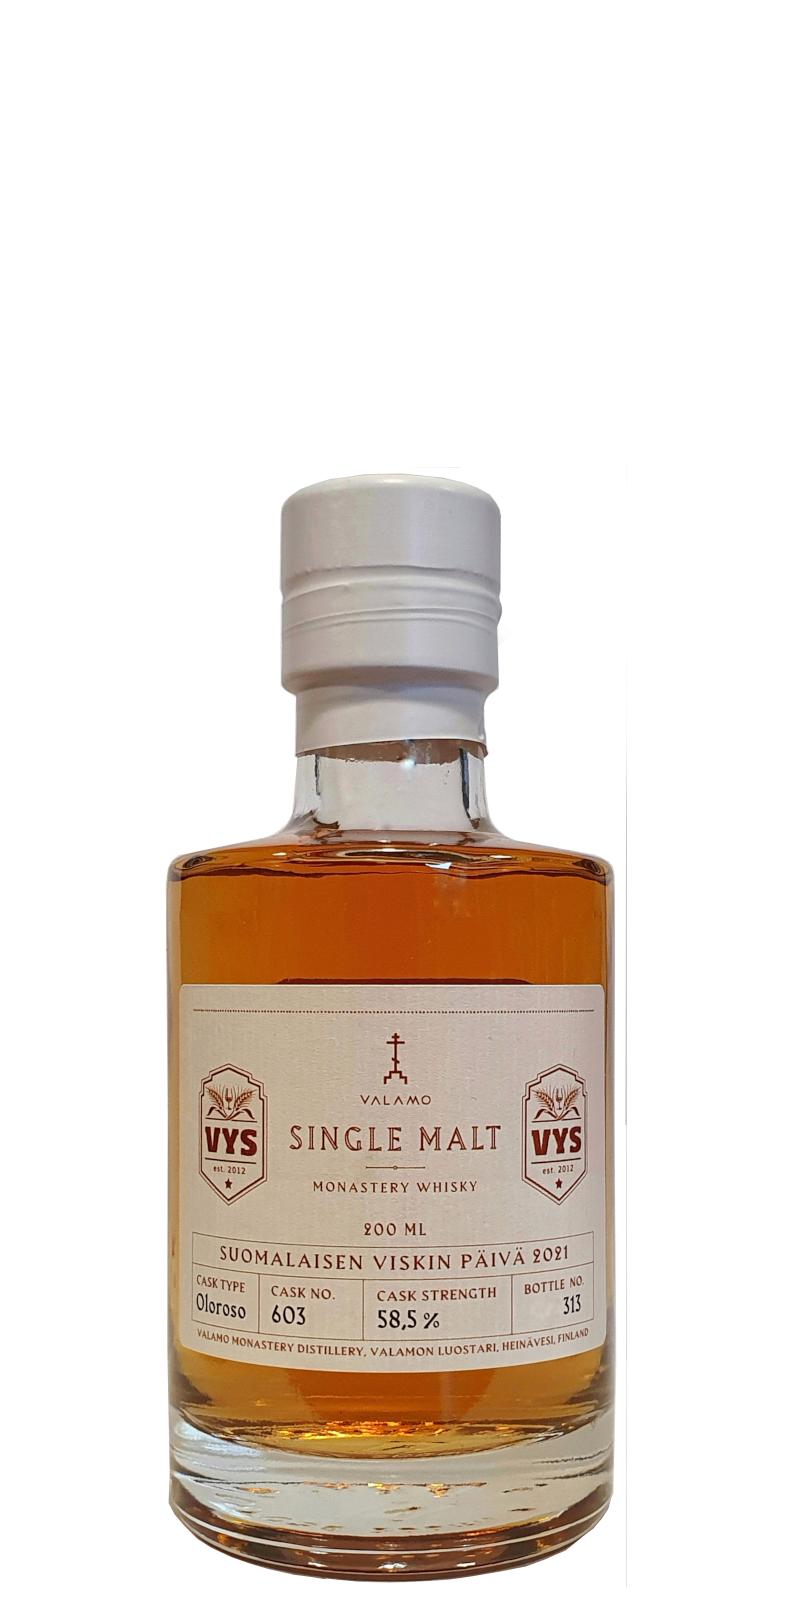 Valamo Monastery Whisky Single Malt Oloroso #603 Suomalaisen Viskin Paiva 2021 58.5% 200ml